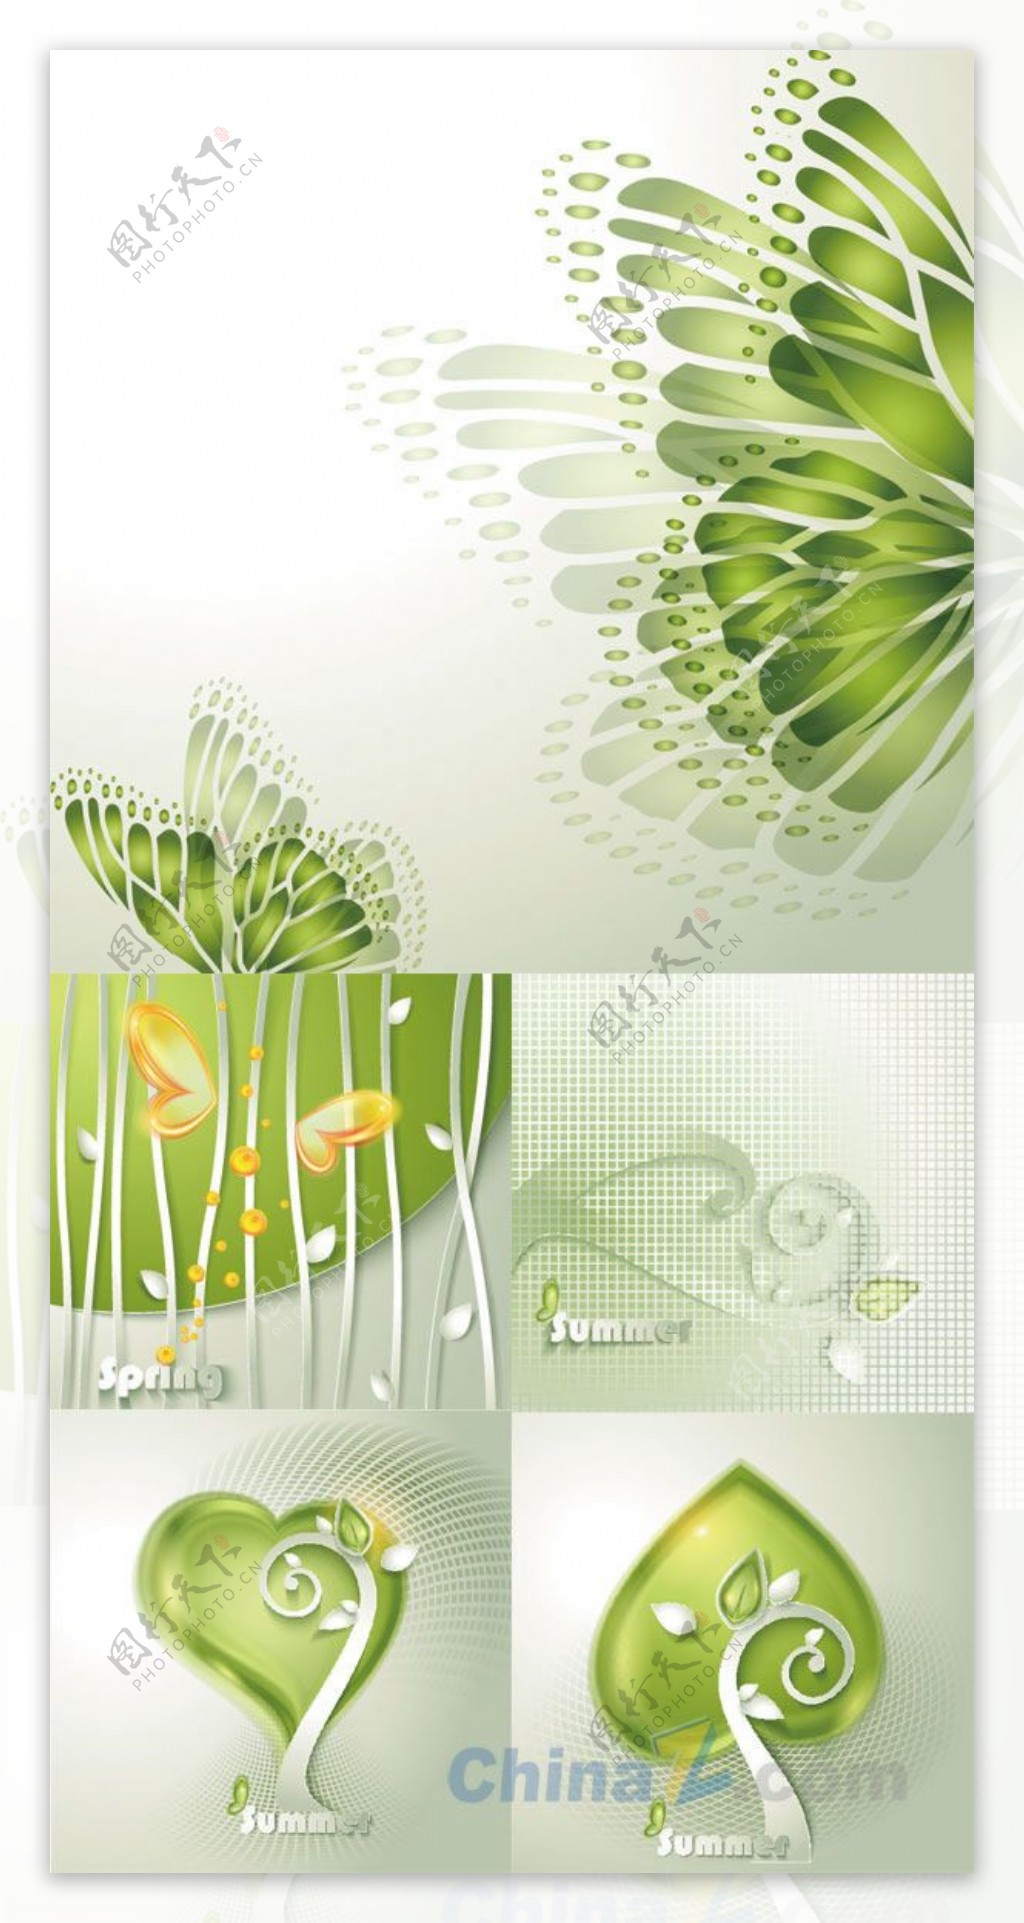 绿蝴蝶创意设计矢量素材